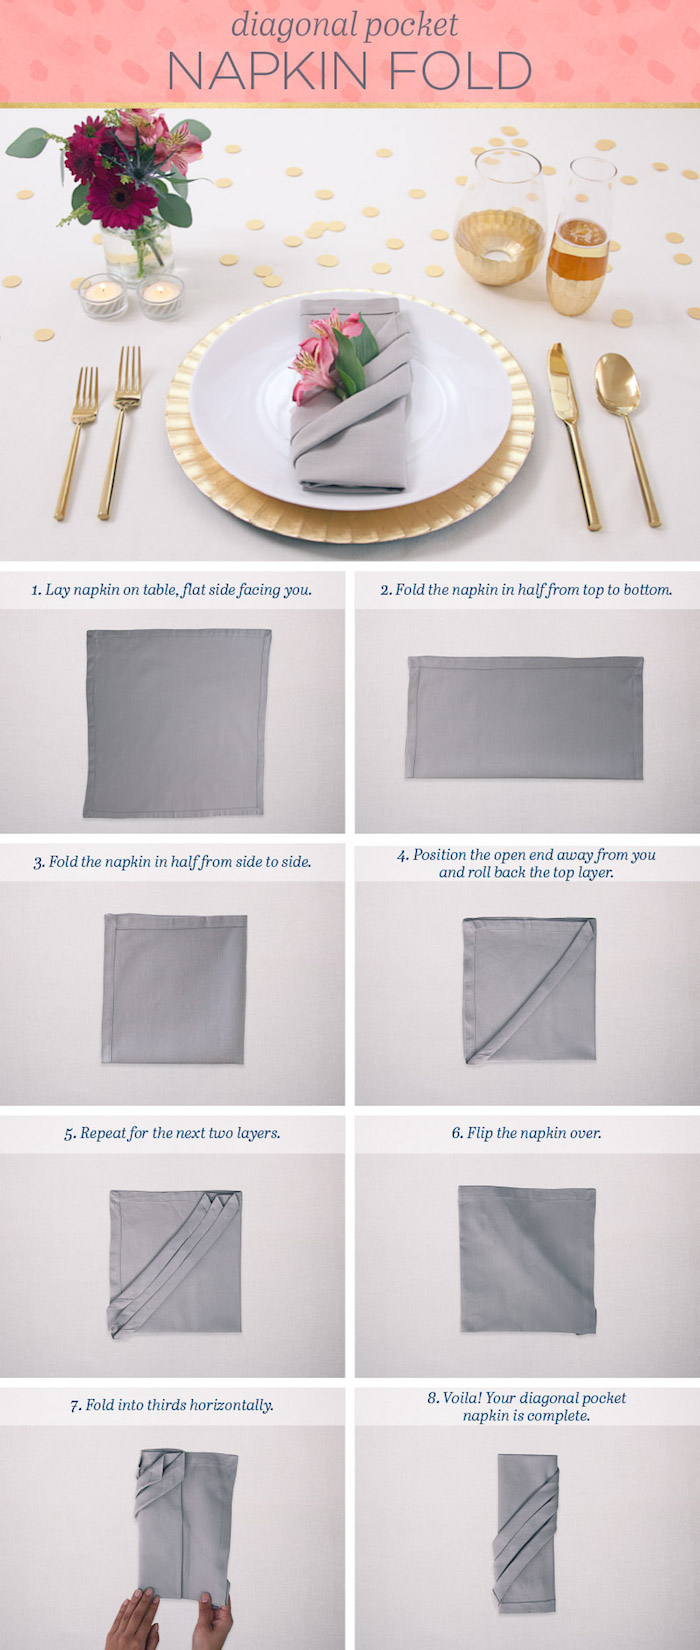 guide avec instructions pour apprendre origami, pliage de serviette en tissu gris, couverts de table dorés